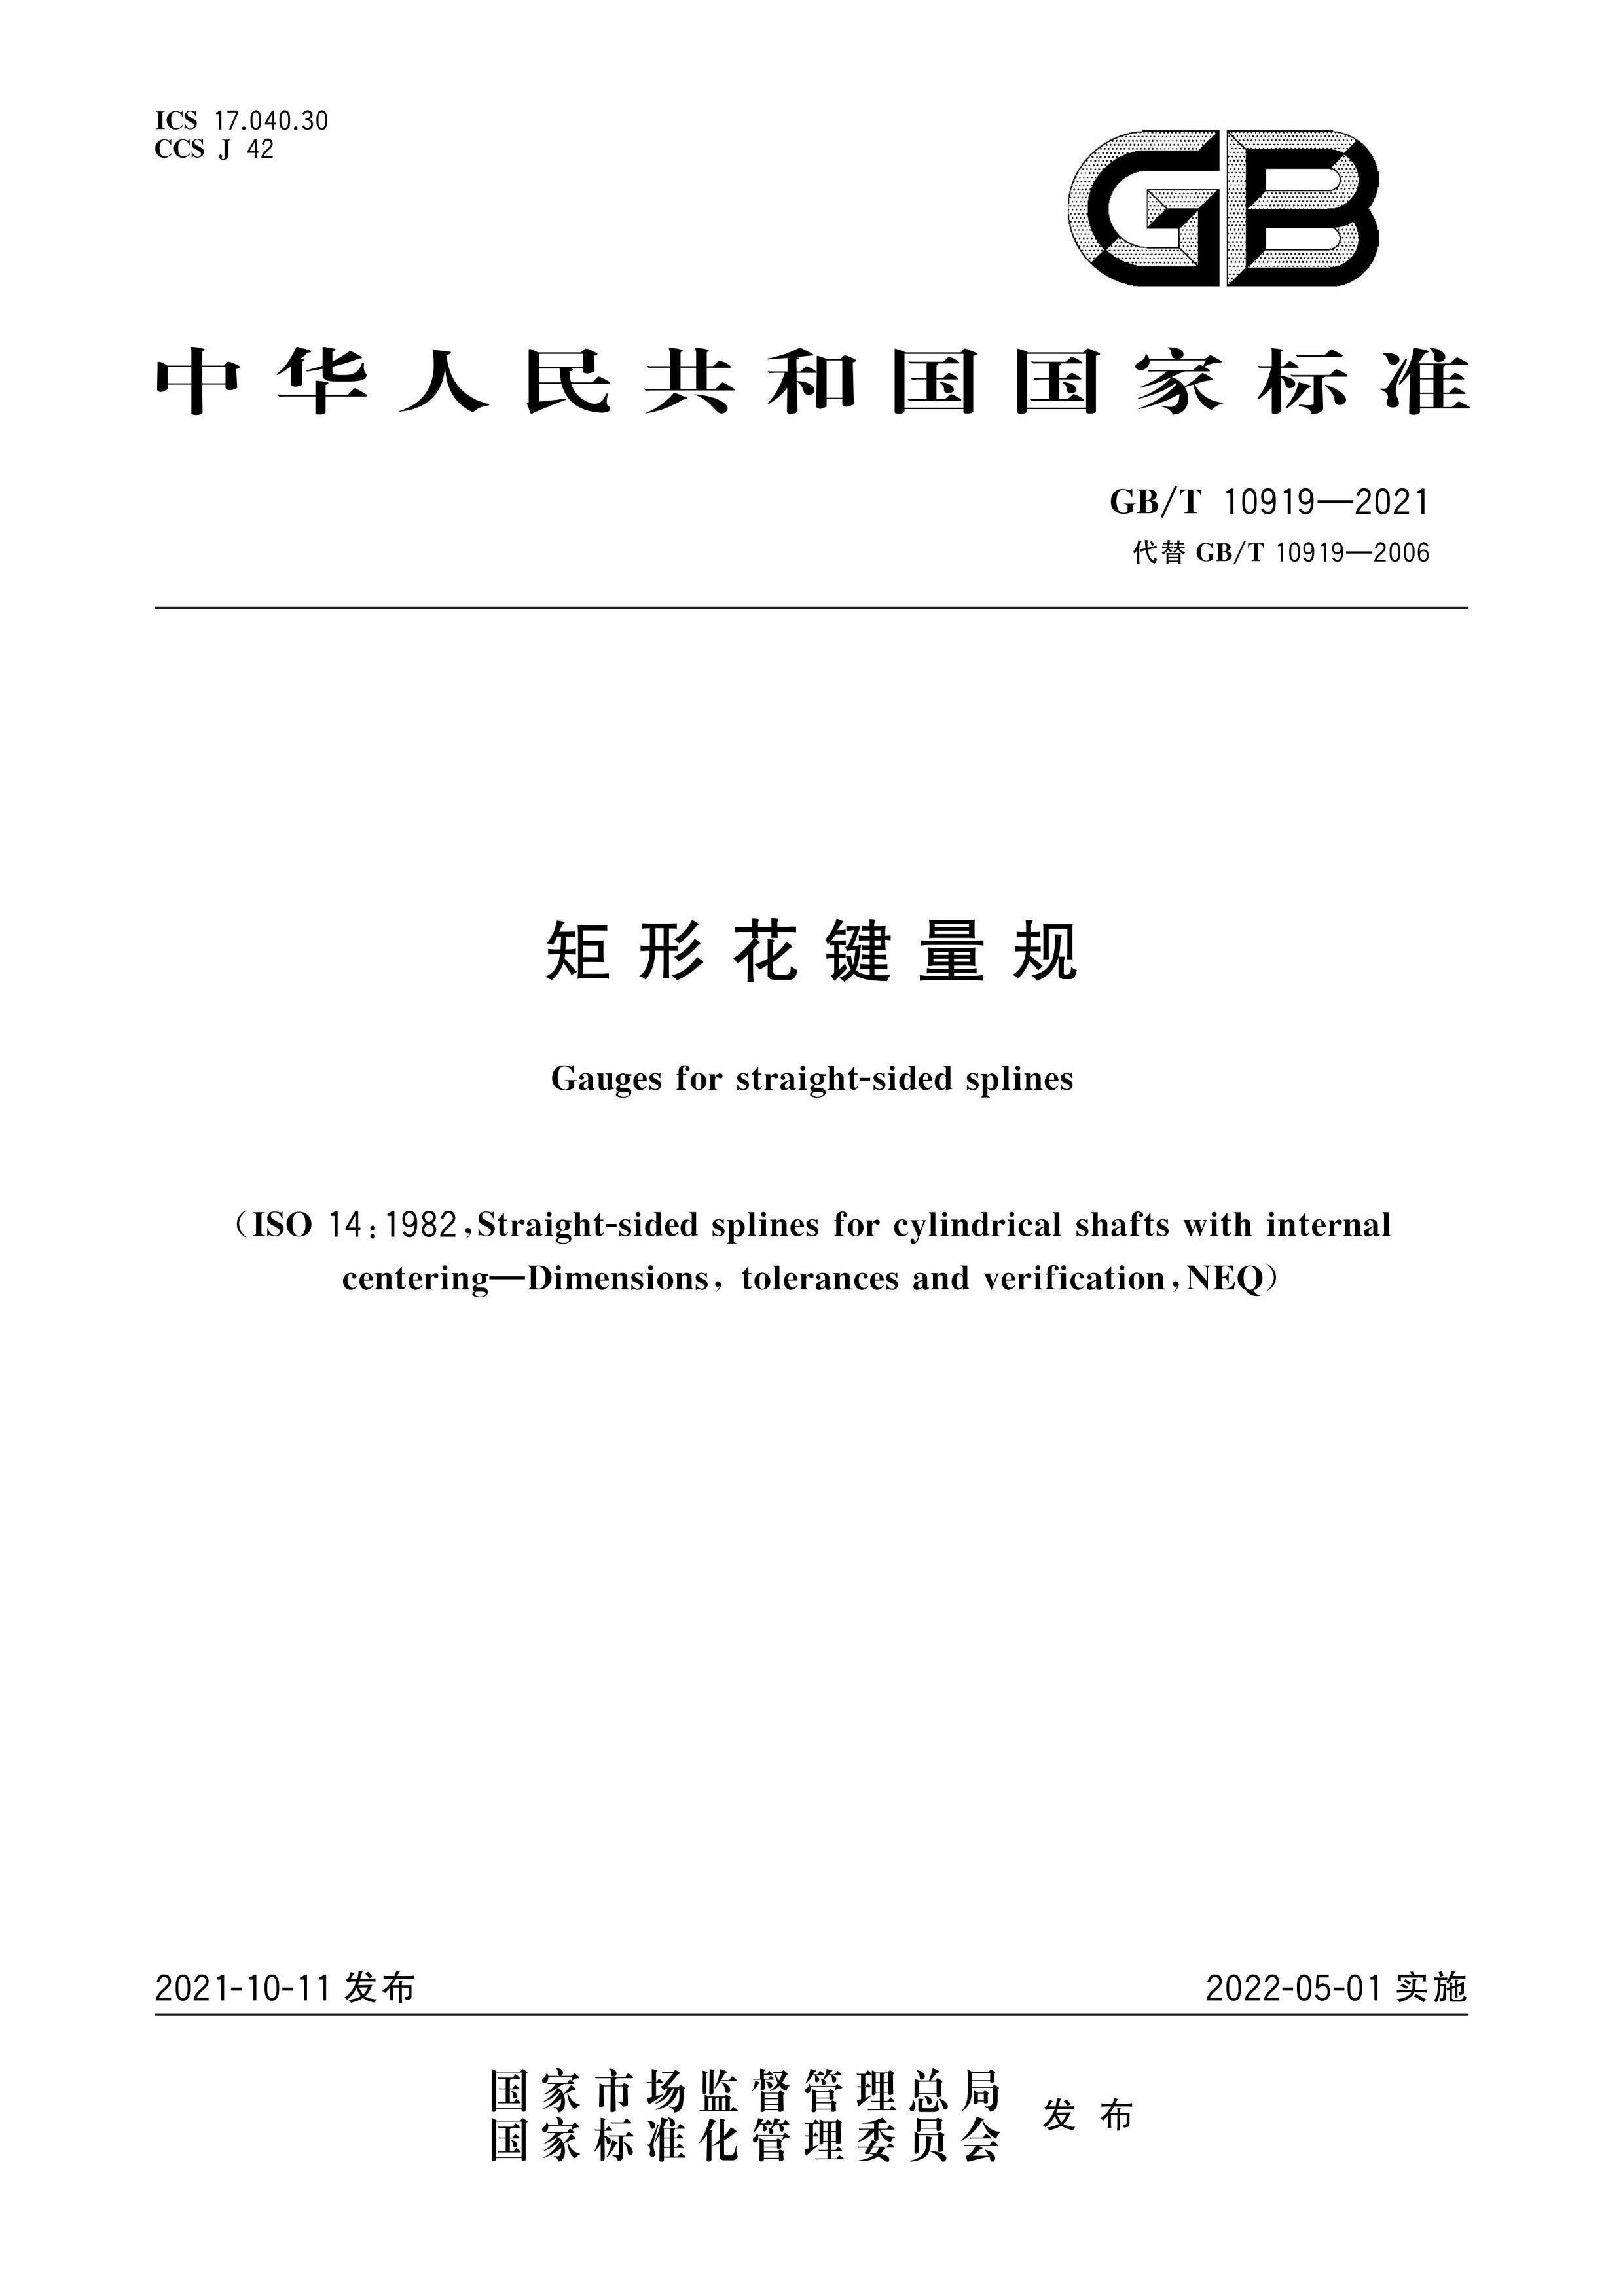 GBMT 10919-2021 λ.pdf1ҳ